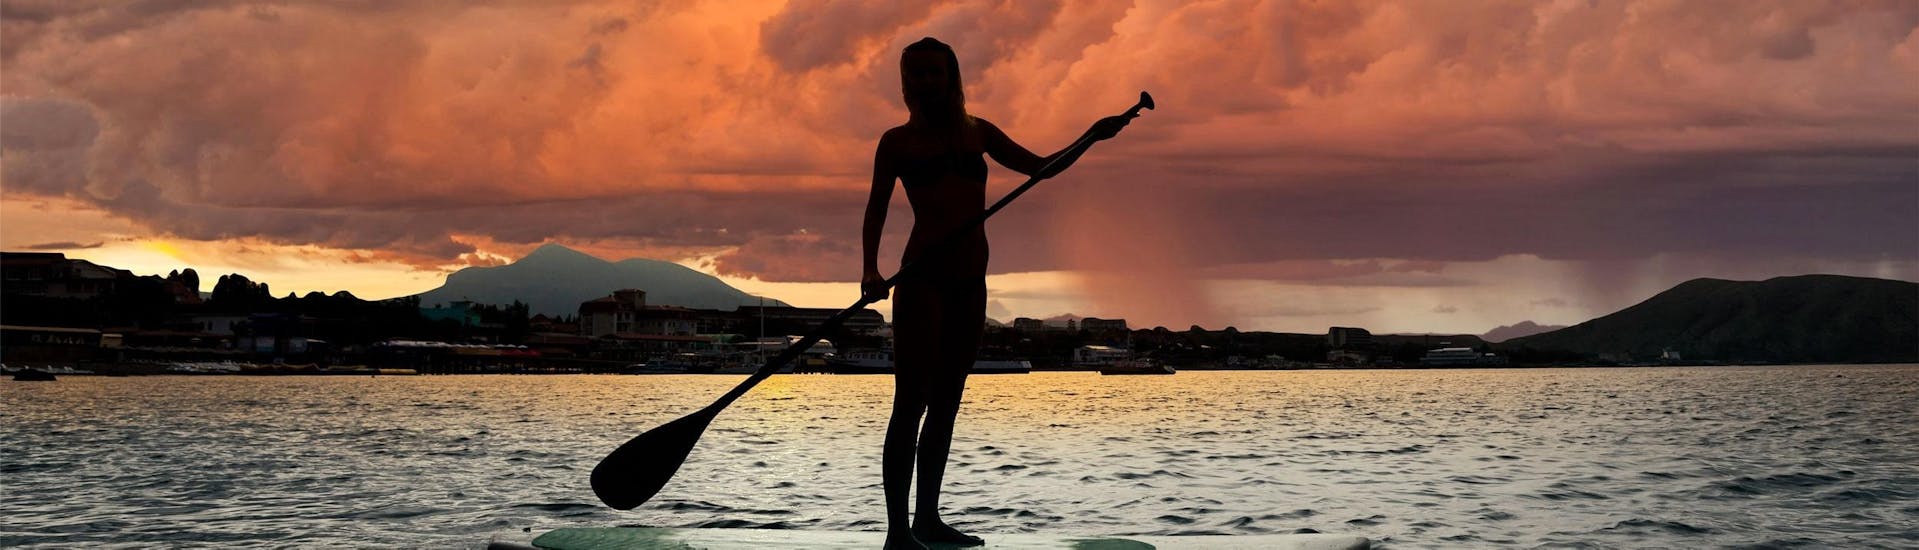 Une femme se tient debout sur une planche au coucher du soleil et profite de sa Location de stand up paddle sur le lac d'Annecy avec Le Spot.